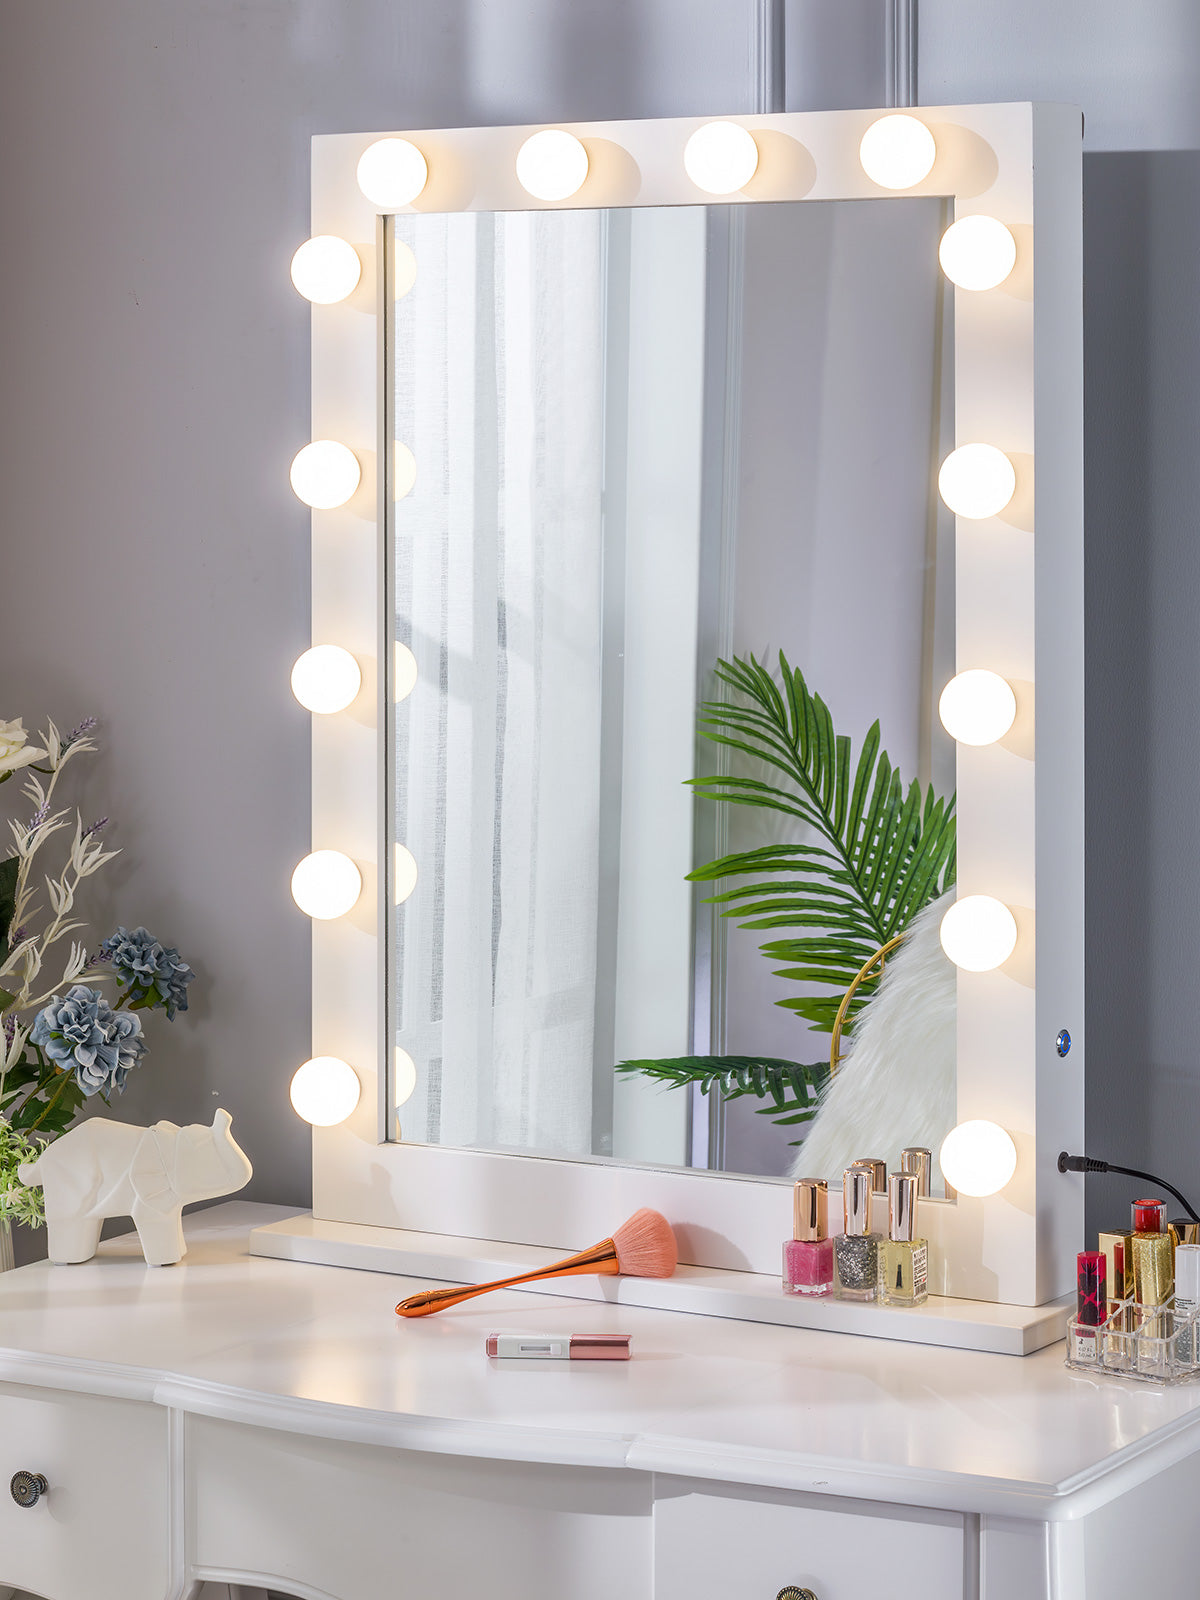 Max1 Pro Large Hollywood LED Vanity Mirror - White